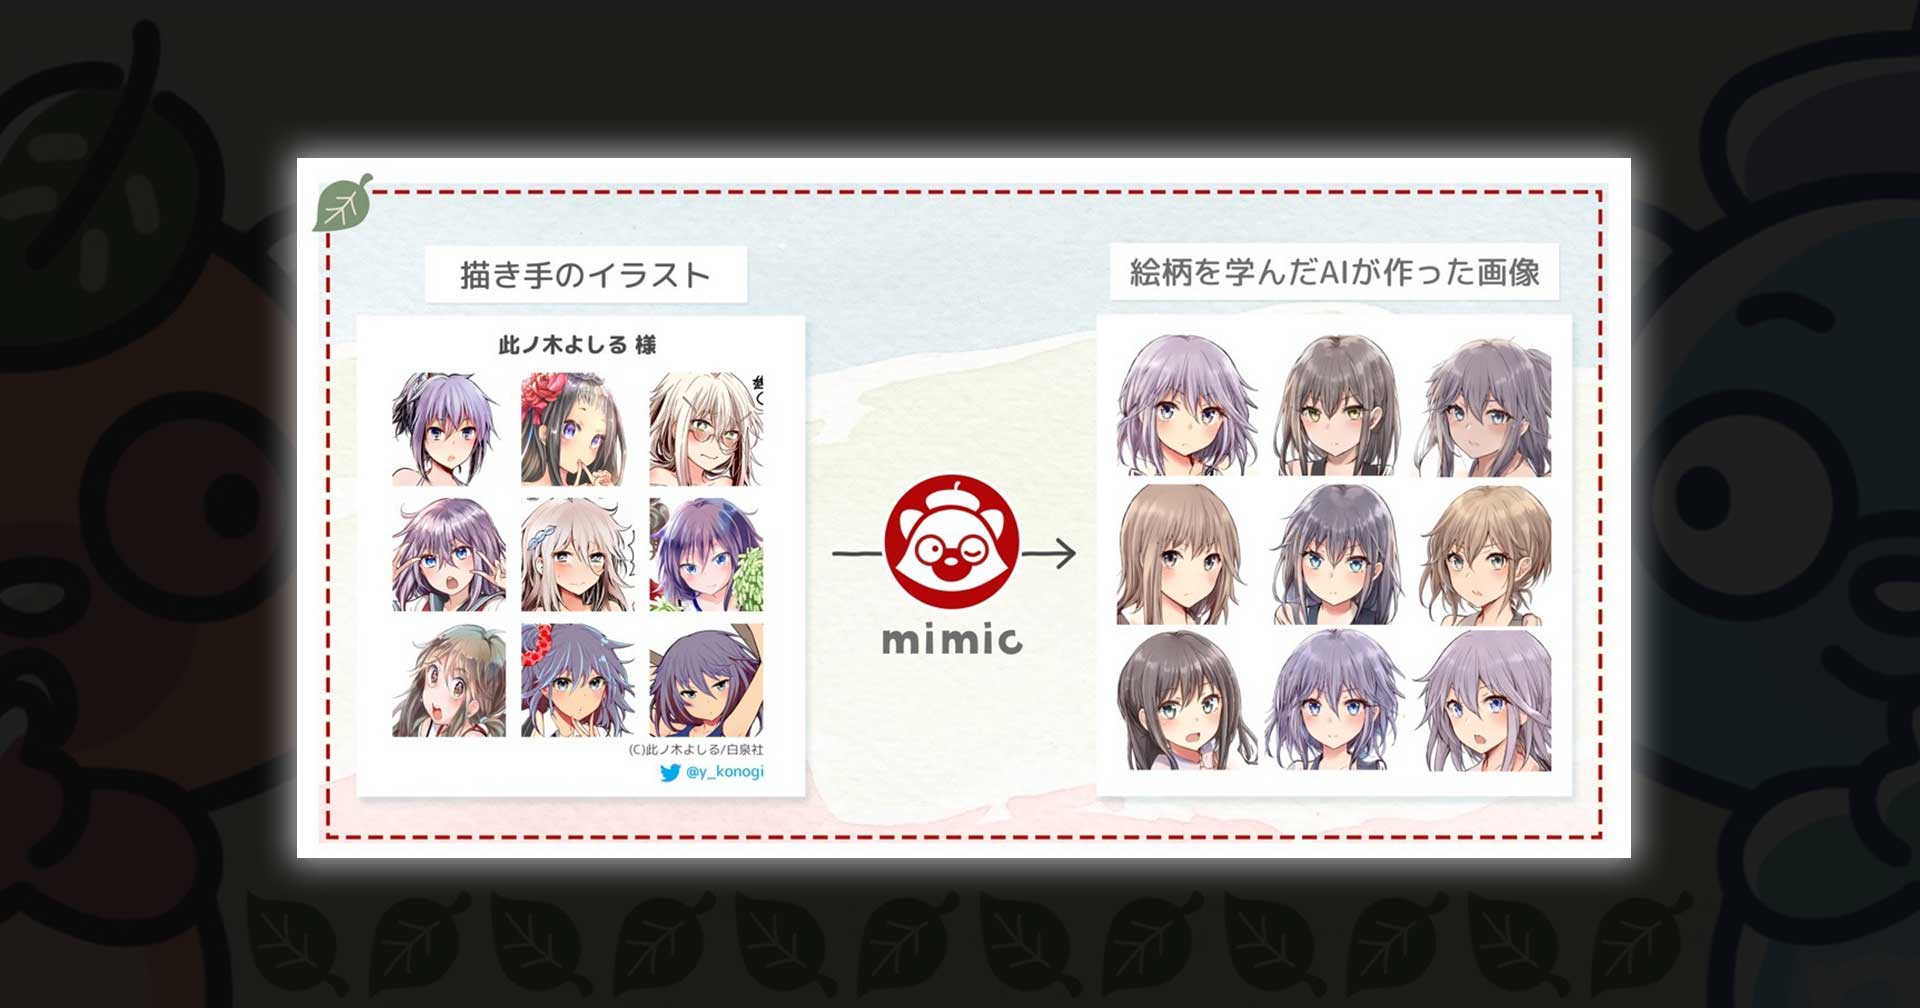 นักวาดญี่ปุ่นกังวลหนัก หลังมีโปรแกรมเมอร์สร้าง Mimic AI เลียนแบบลายเส้นผลงานได้